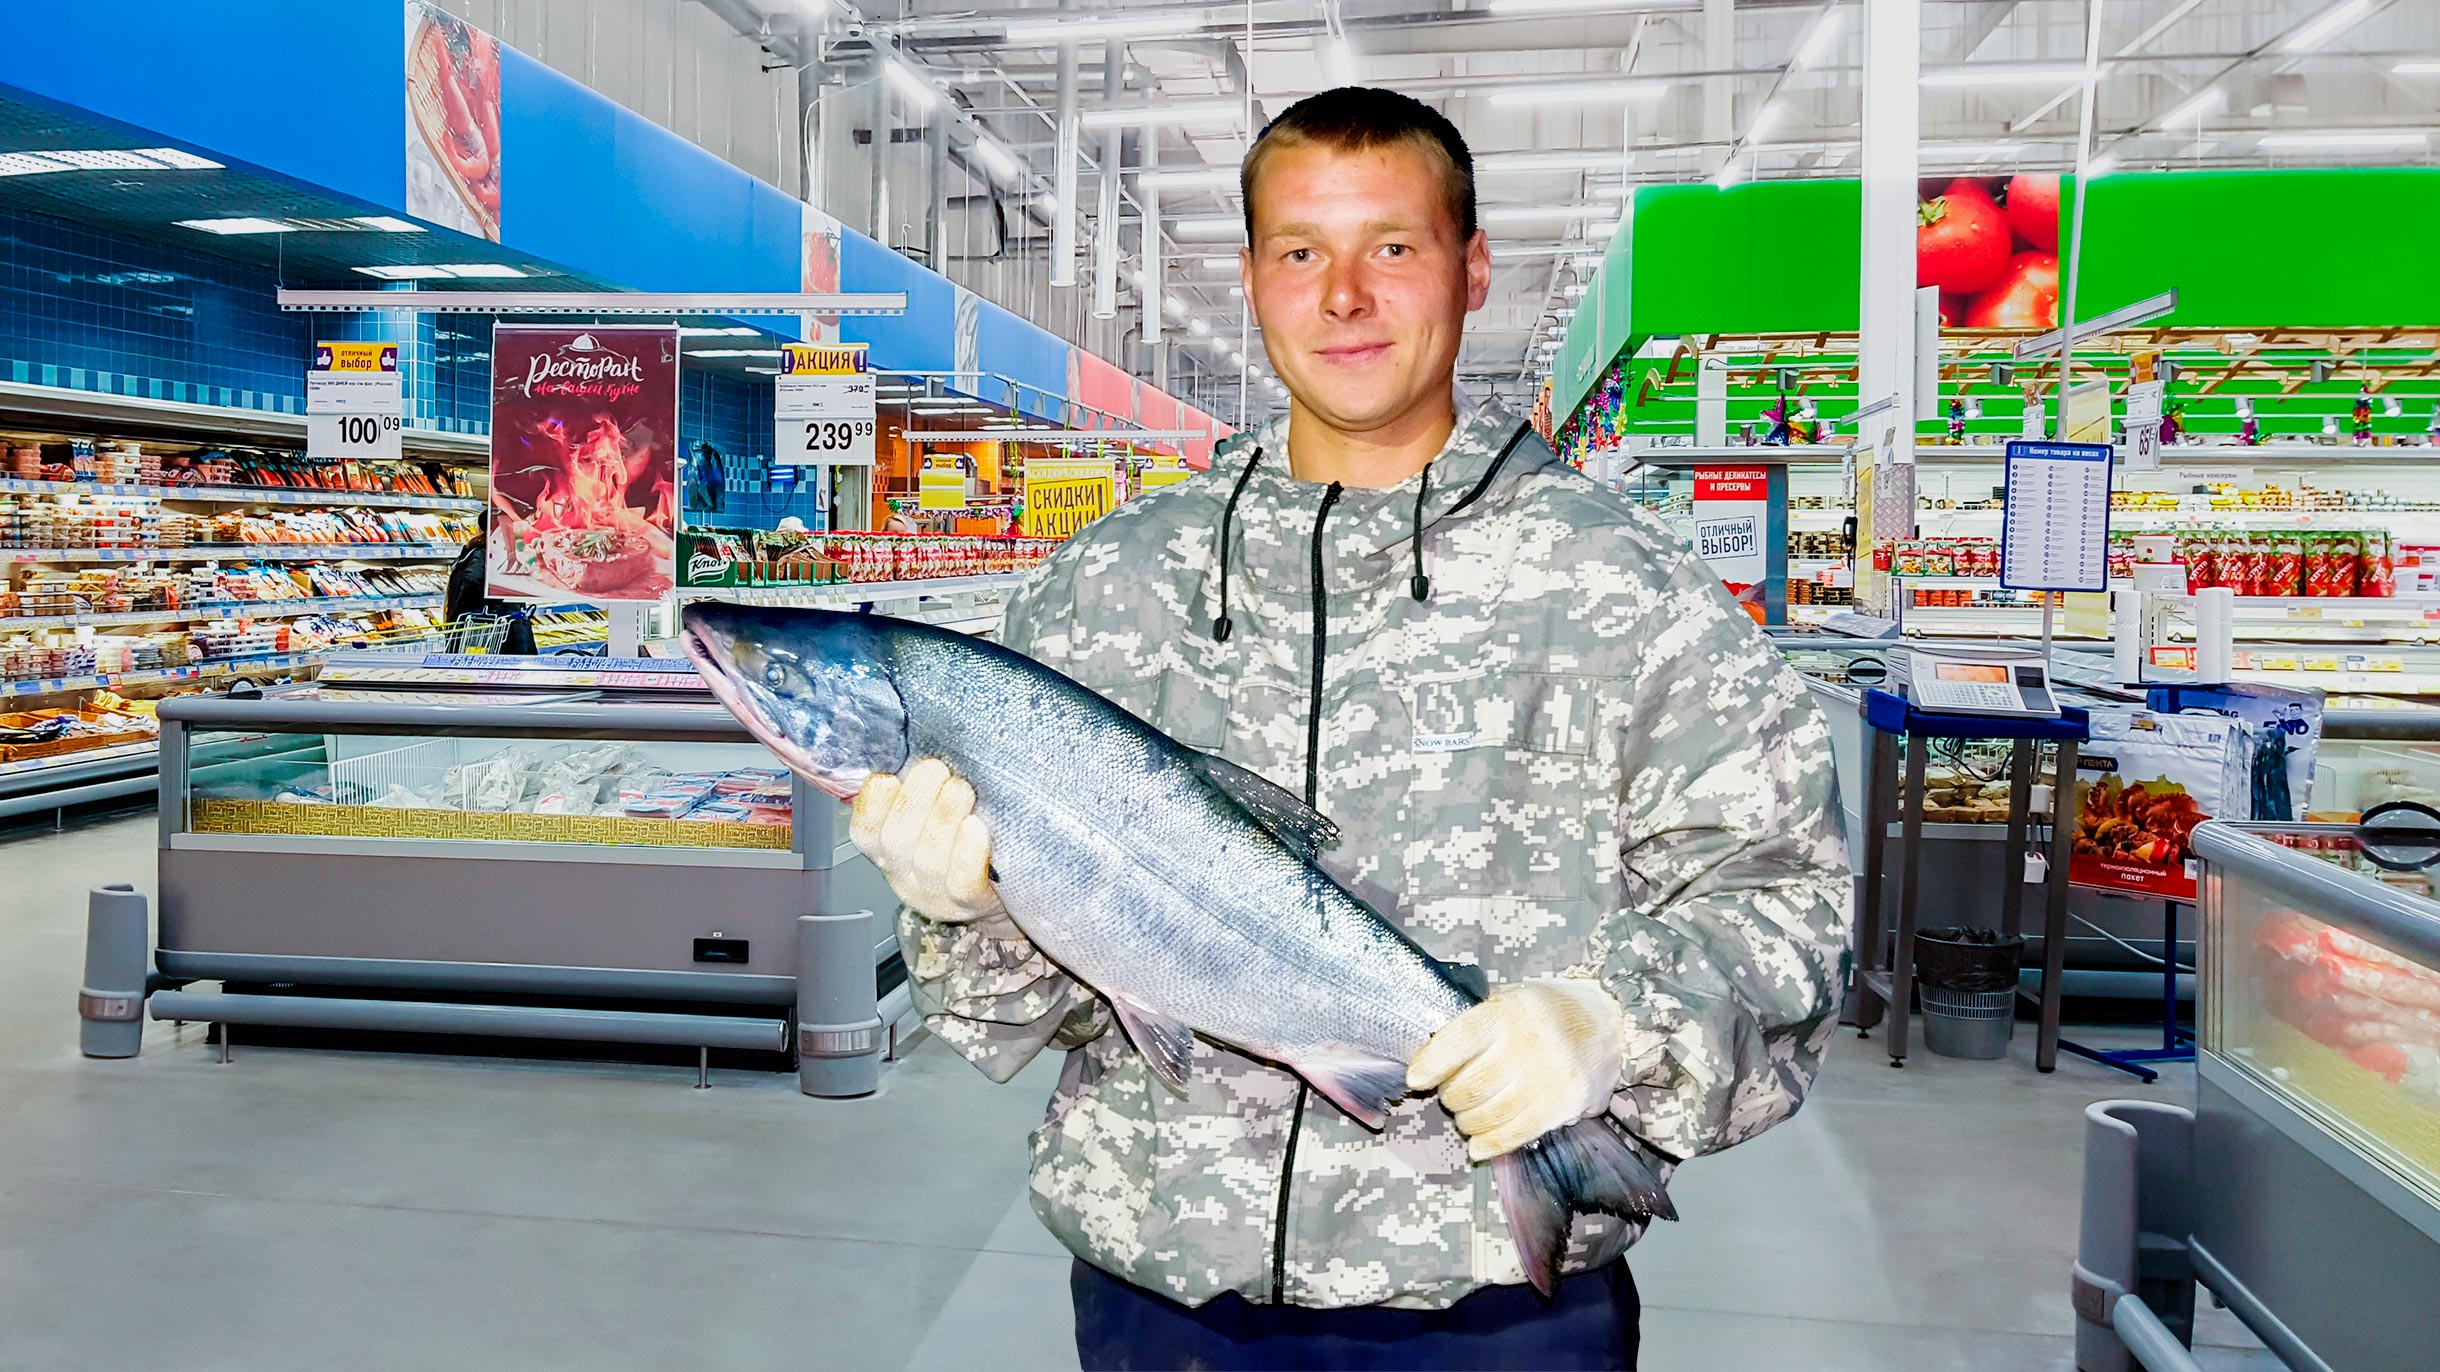 Что будет, если увезти из супермаркета рыбу и не заплатить